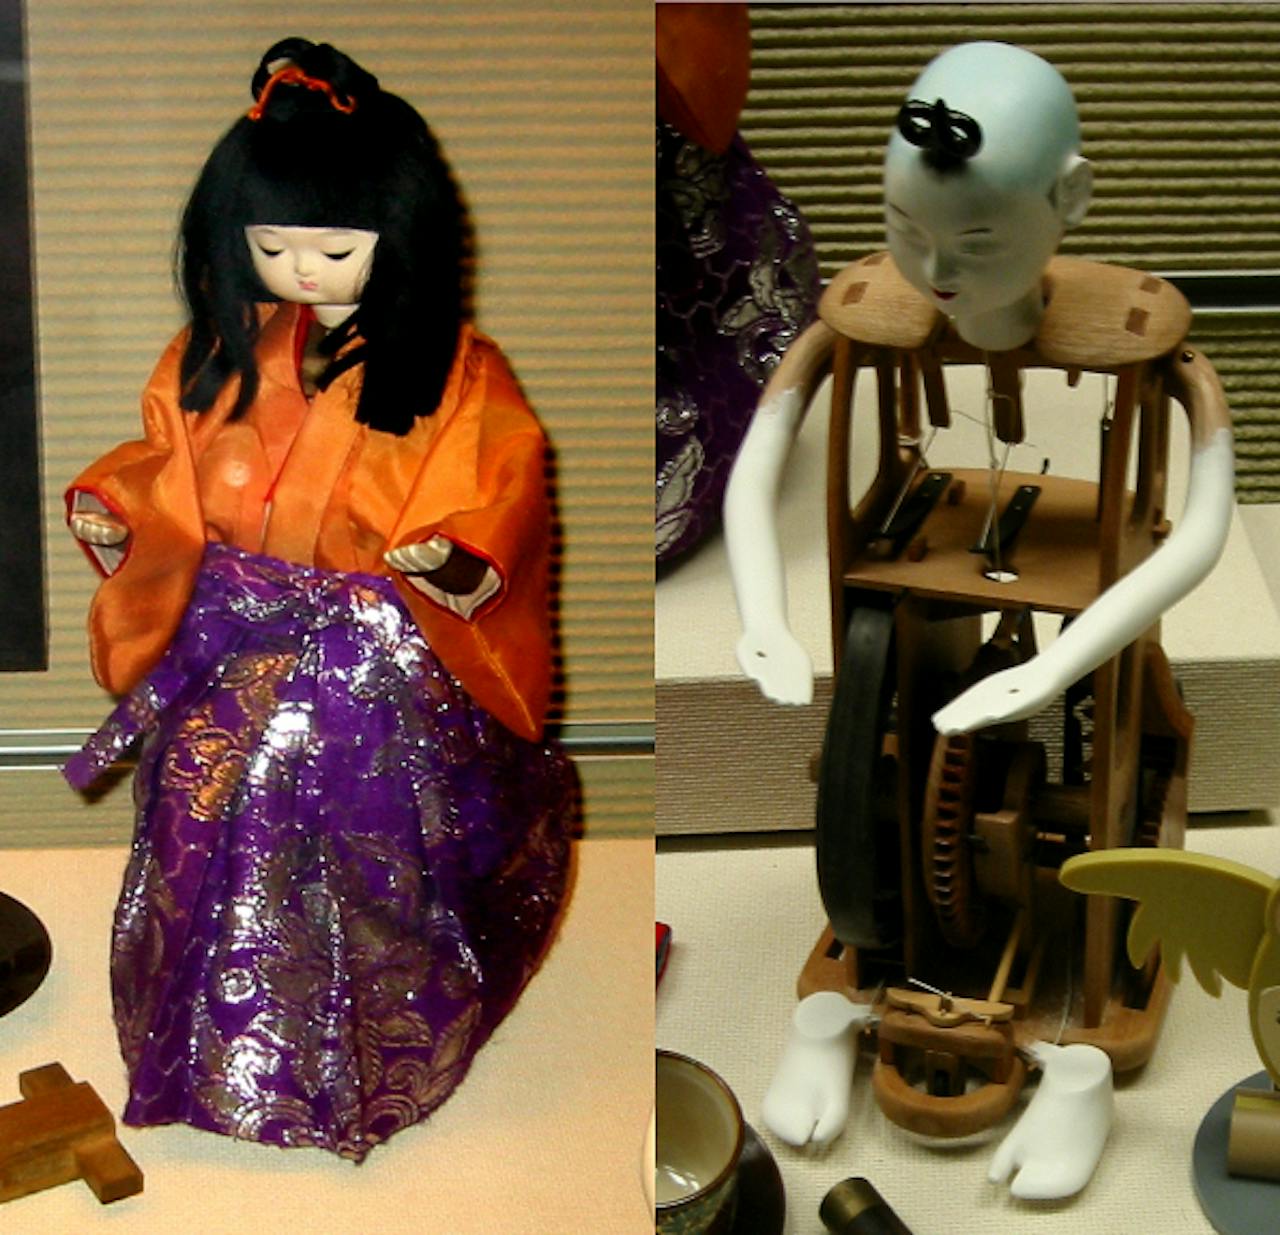 Een pop gekleed in een kimono en een pop met zichtbare techniek in het lichaam.